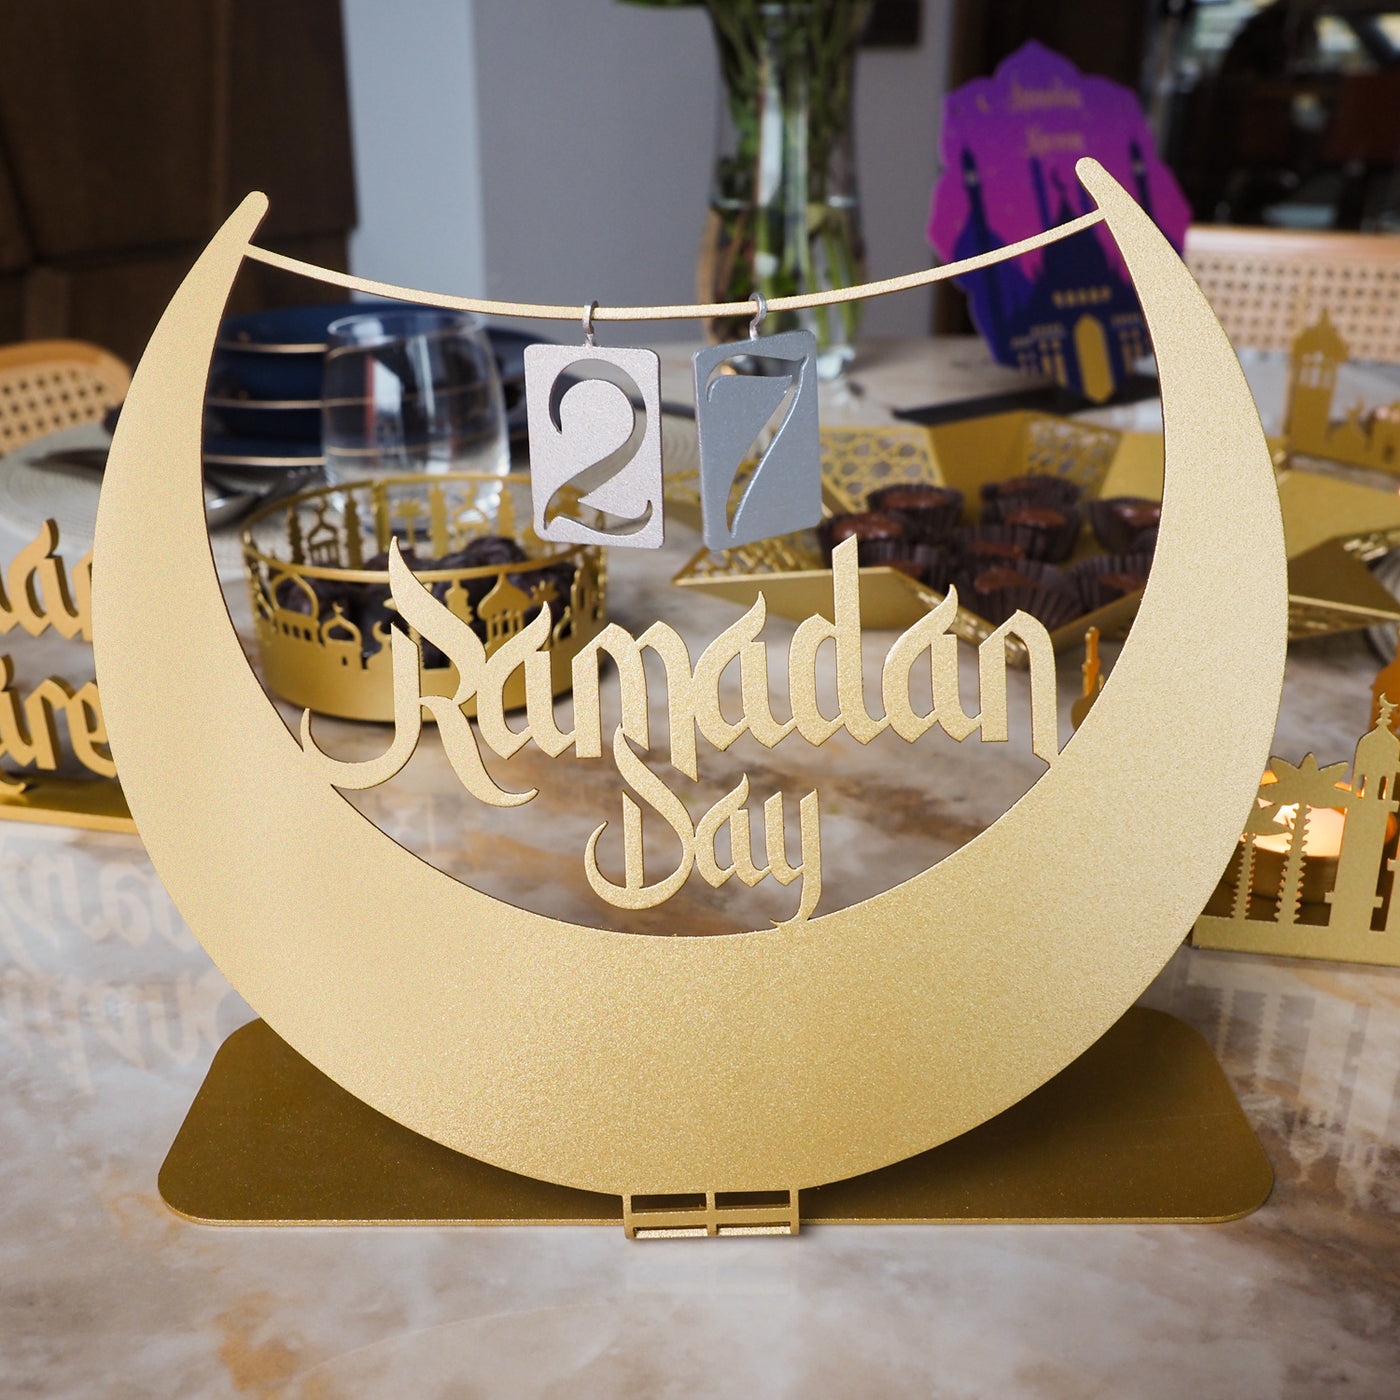 تصميم بفكرة جديد لهلال رمضان مع التقويم الخاص بشهر رمضان - WAMH125